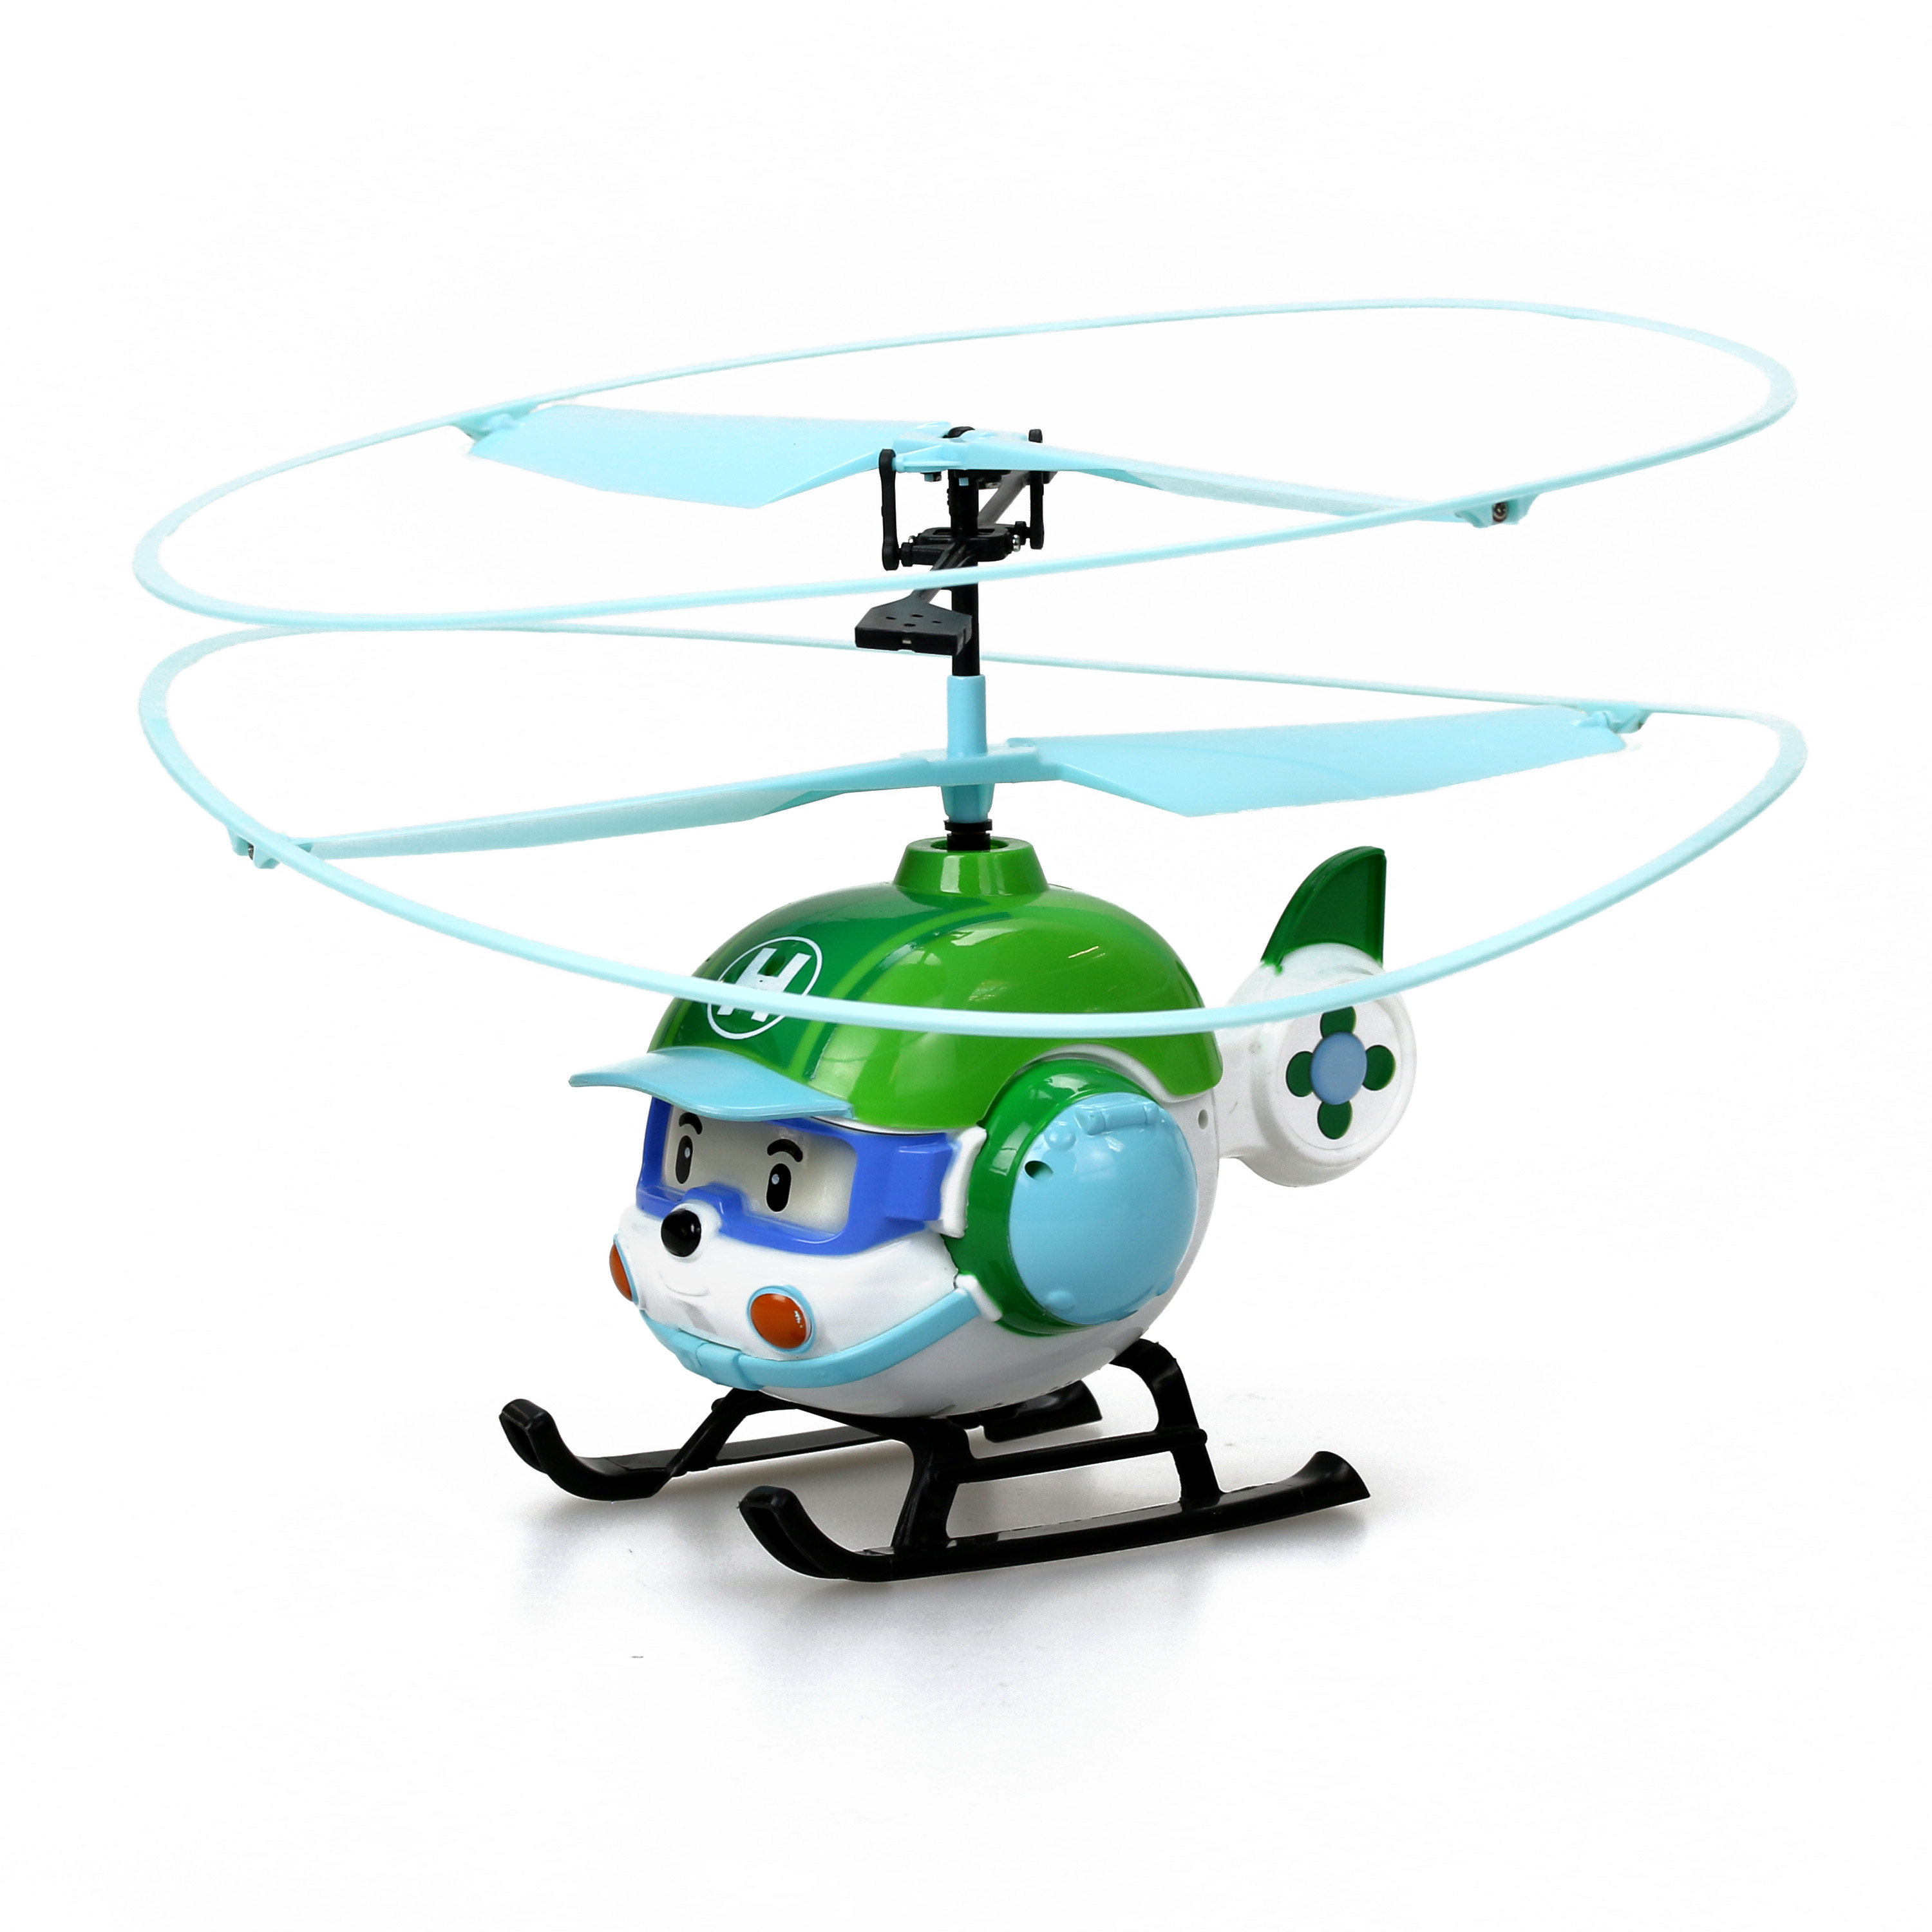 Вертолет купить игрушка. Робокар вертолет Хелли. Вертолёт Хелли игрушка. Вертолет Silverlit Robocar Poli Хэли (83390), 6 см, белый/зеленый. Робокар вертолет Хелли радиоуправляемые.